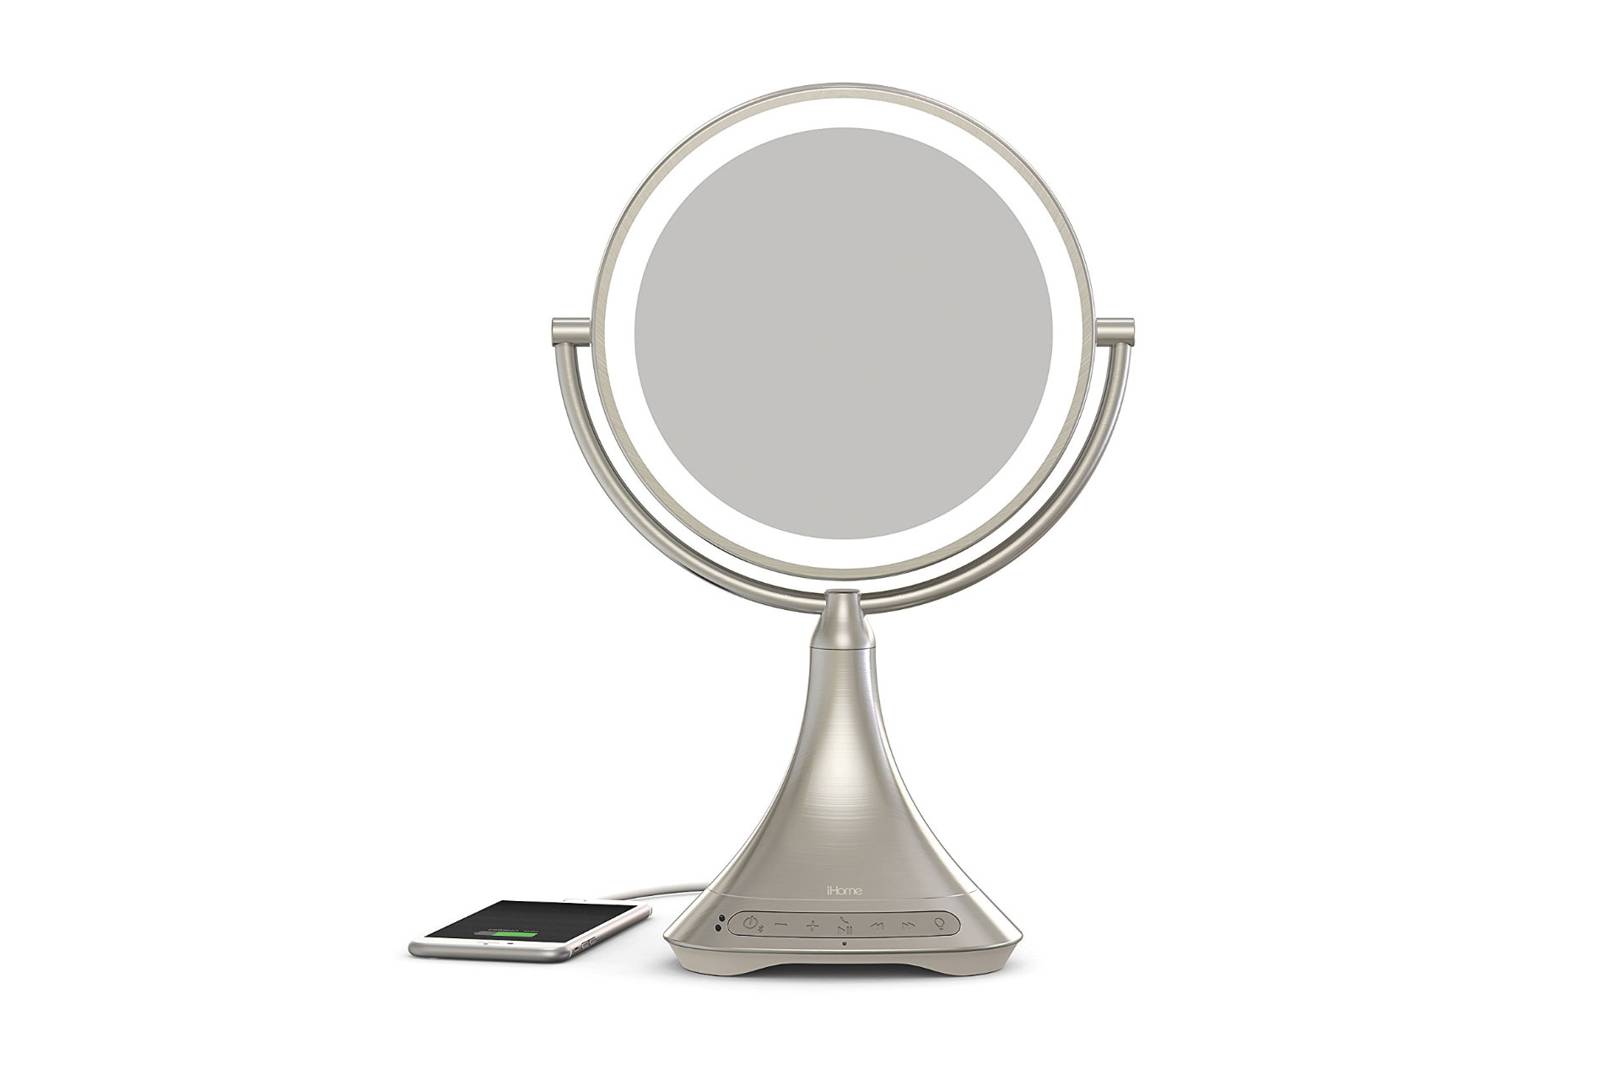 personal vanity mirror